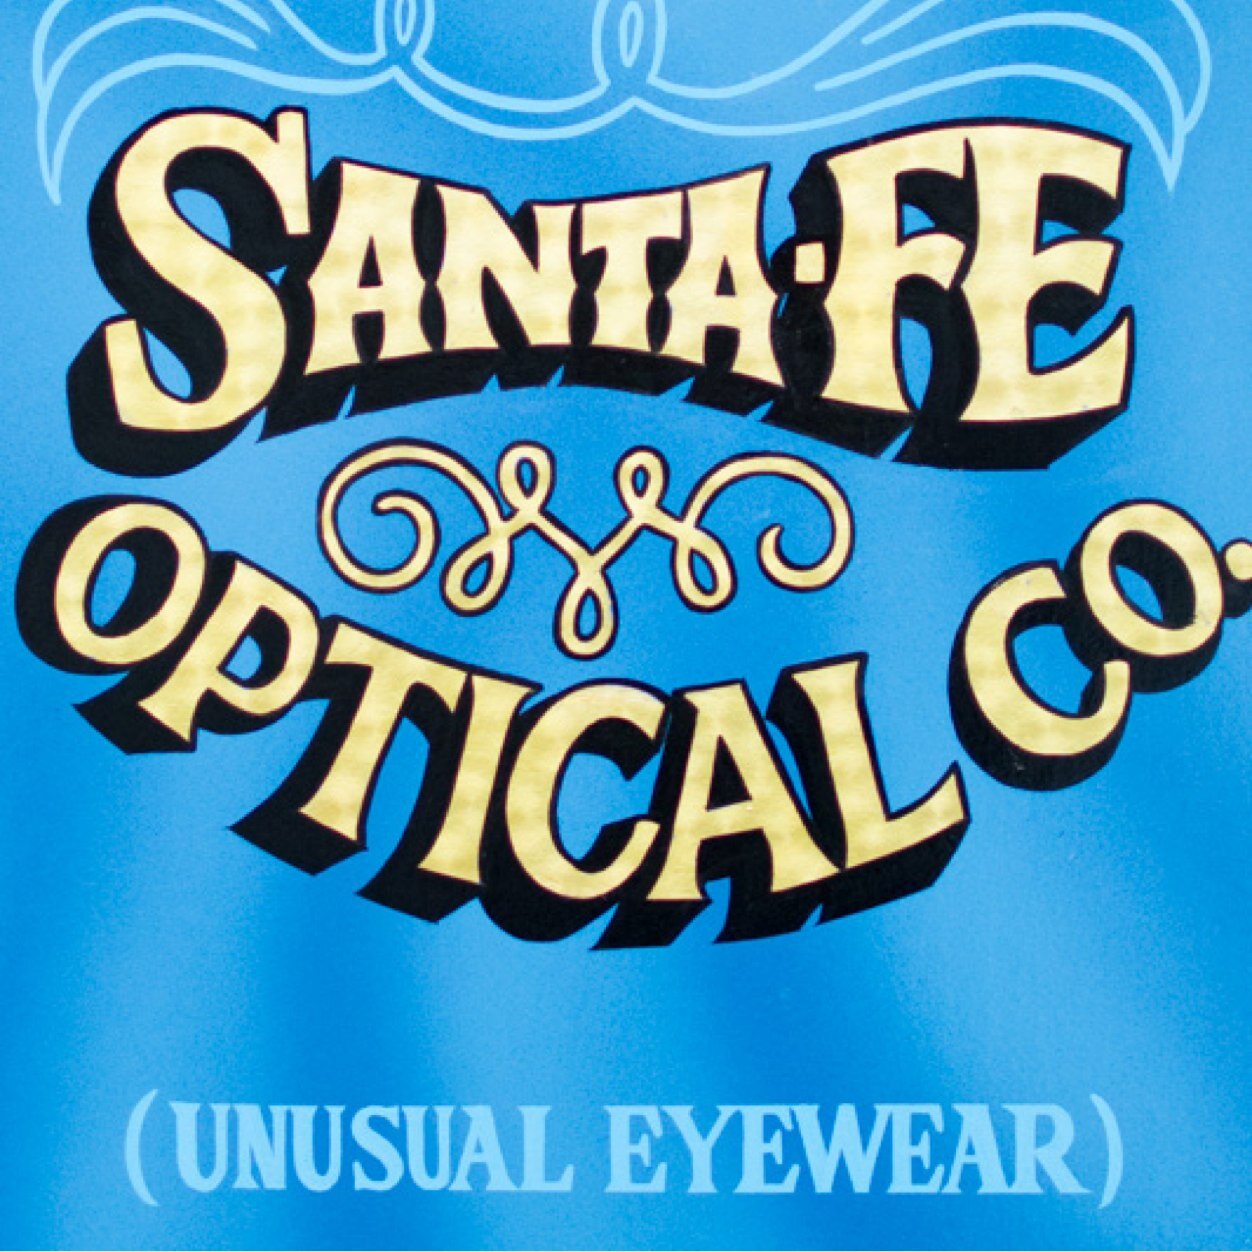 Santa Fe Optical